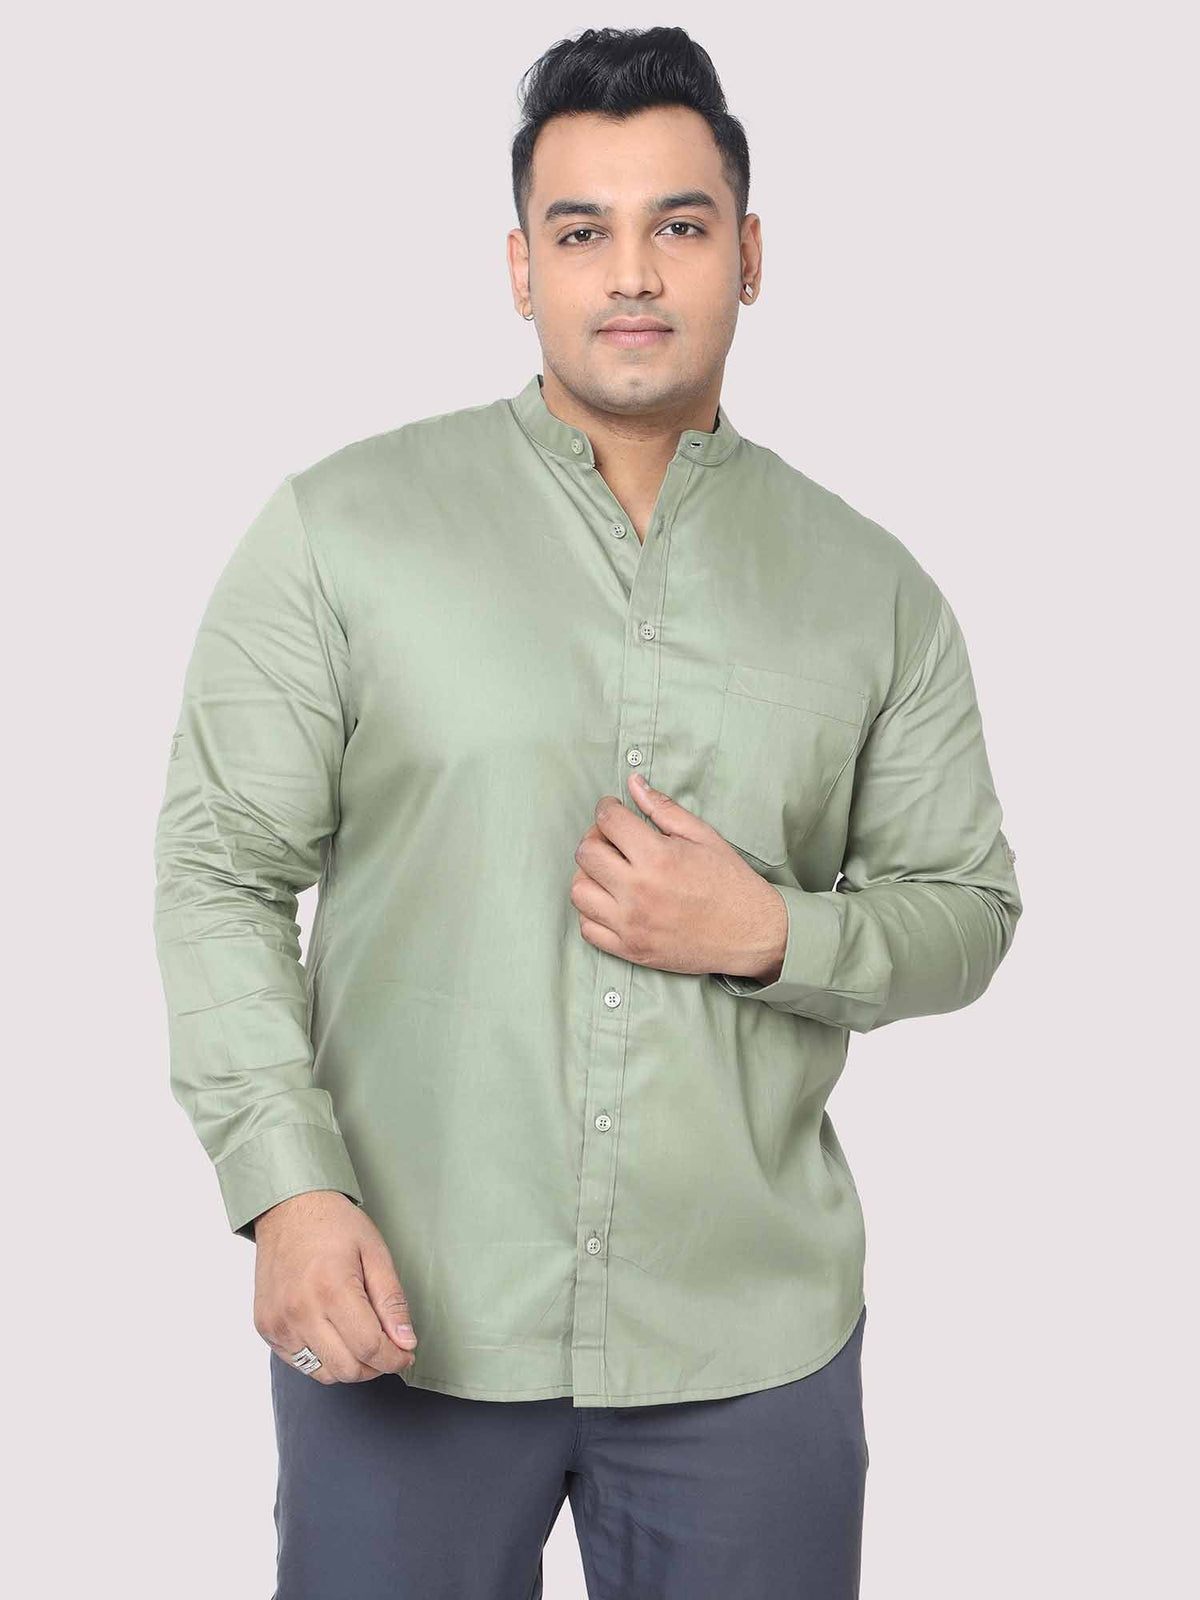 Olive Green Mandarin Collar Men's Plus Size Cotton Full Shirt - Guniaa Fashions